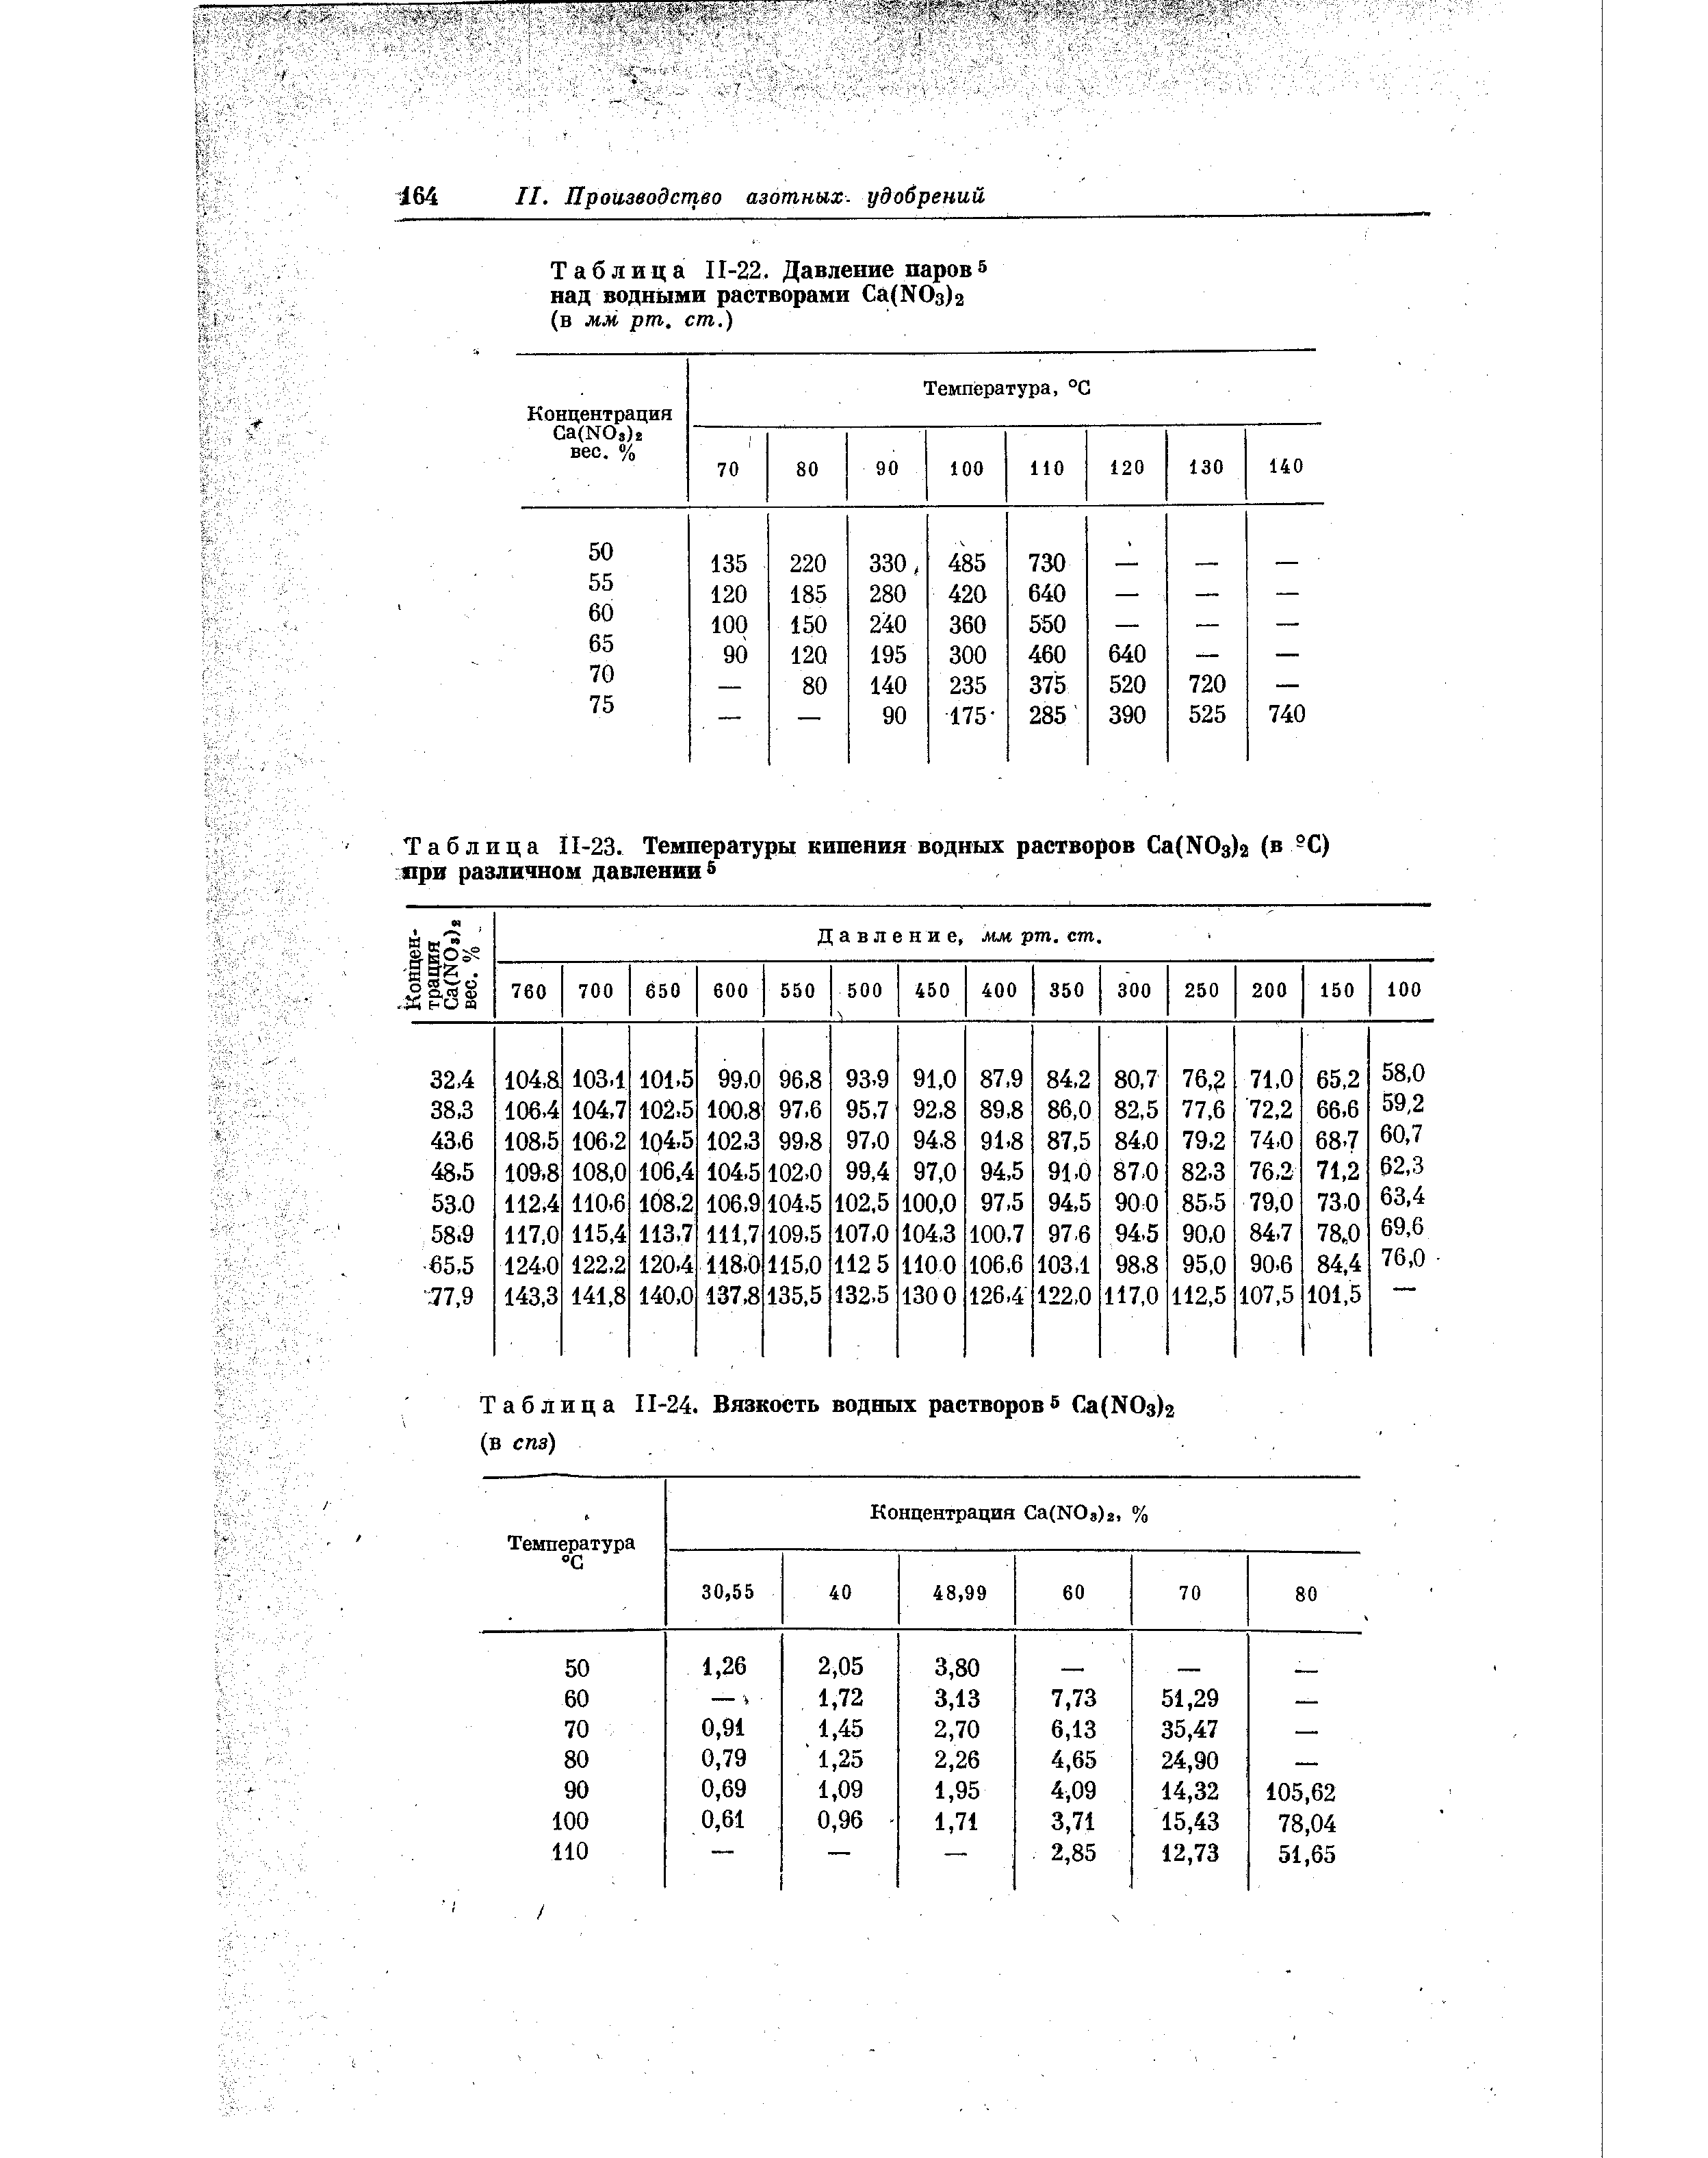 Таблица П-24. Вязкость водных растворов a(NOз)2 (в спз)
